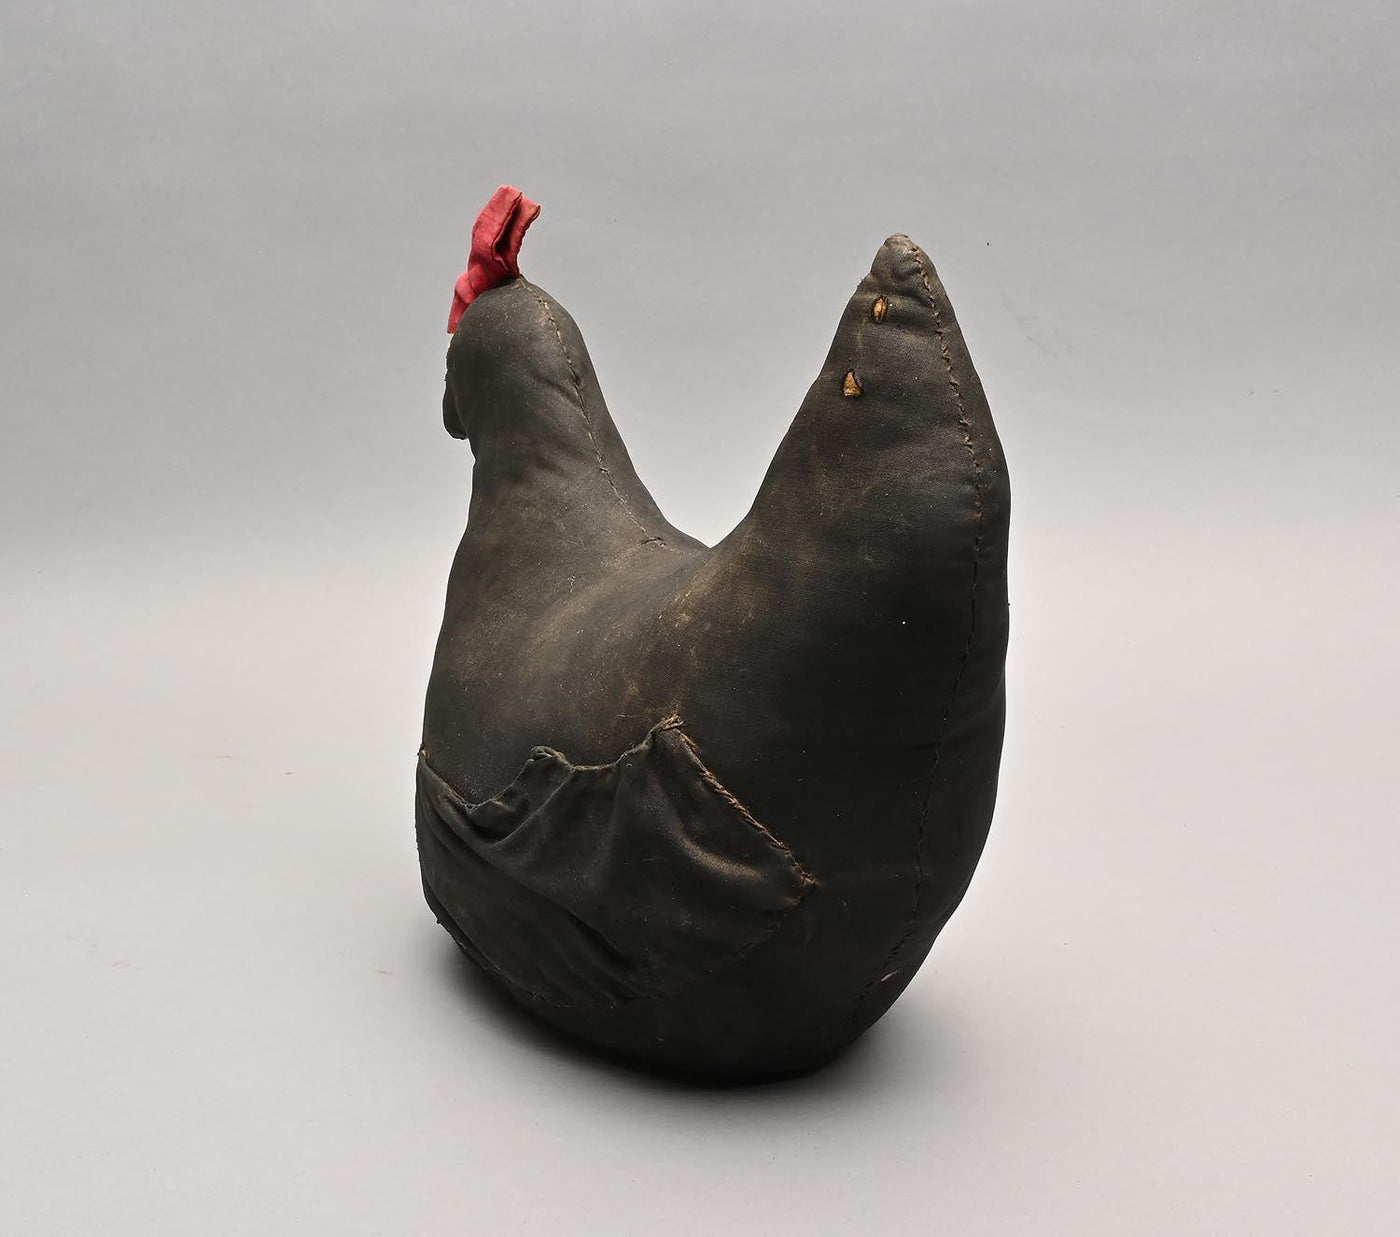 1455020-mennonite-chicken-folk-art-toy-1